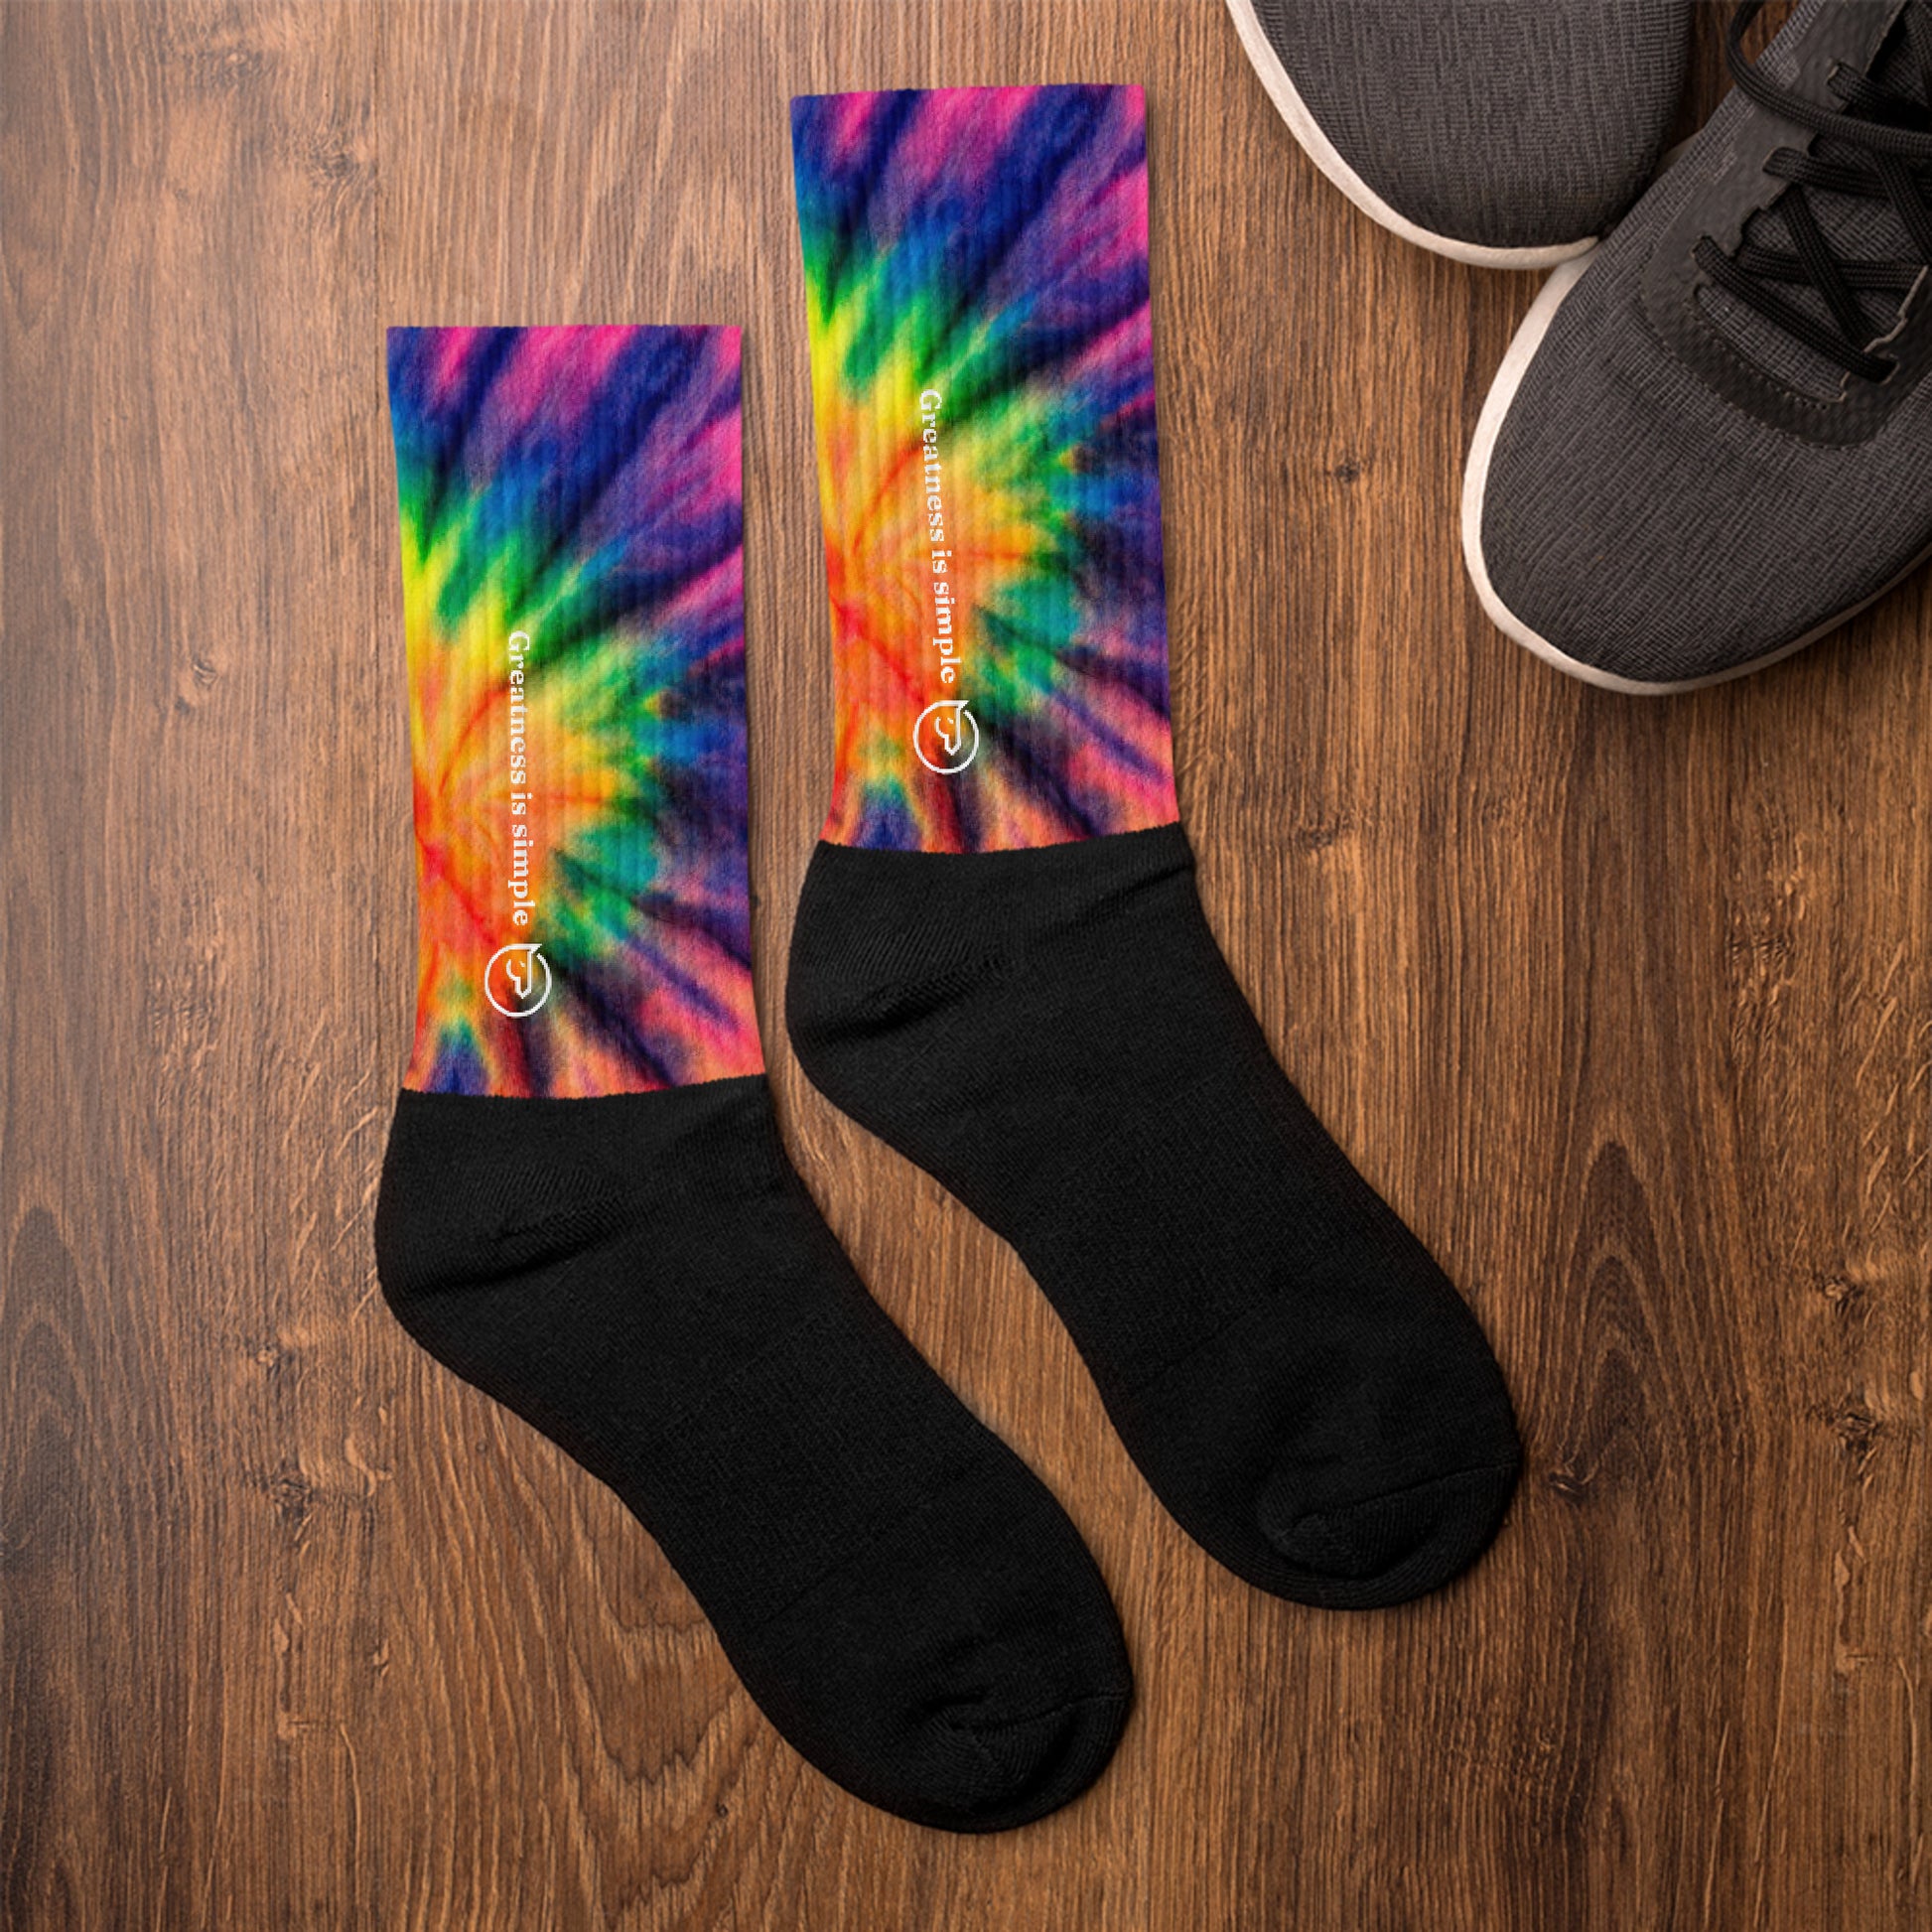 Humble Sportswear, men and women’s crew socks, tie-dyed socks